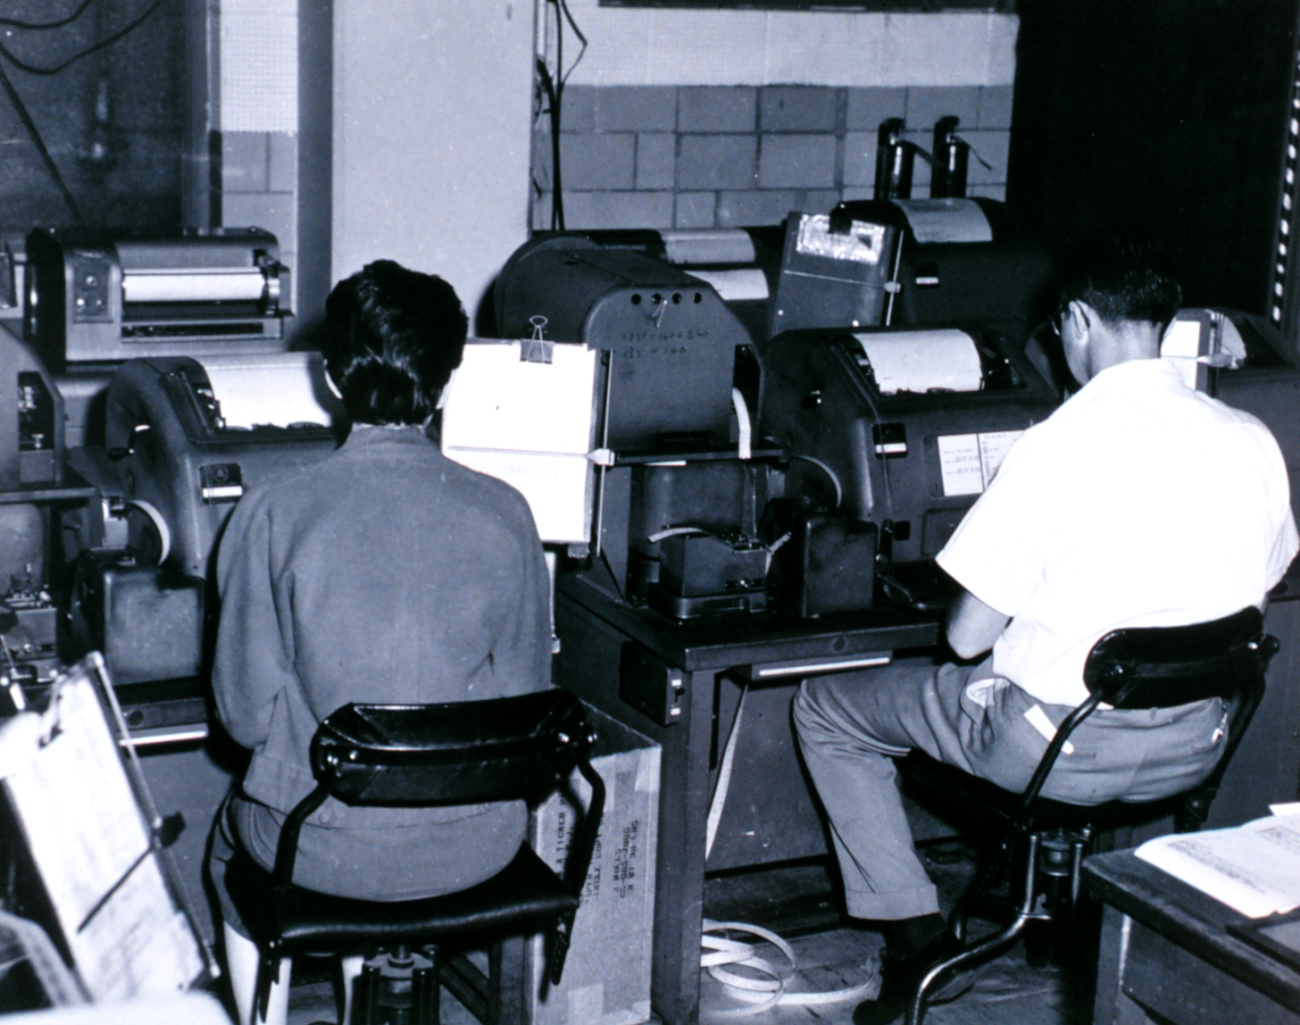 Teletype operators at the U